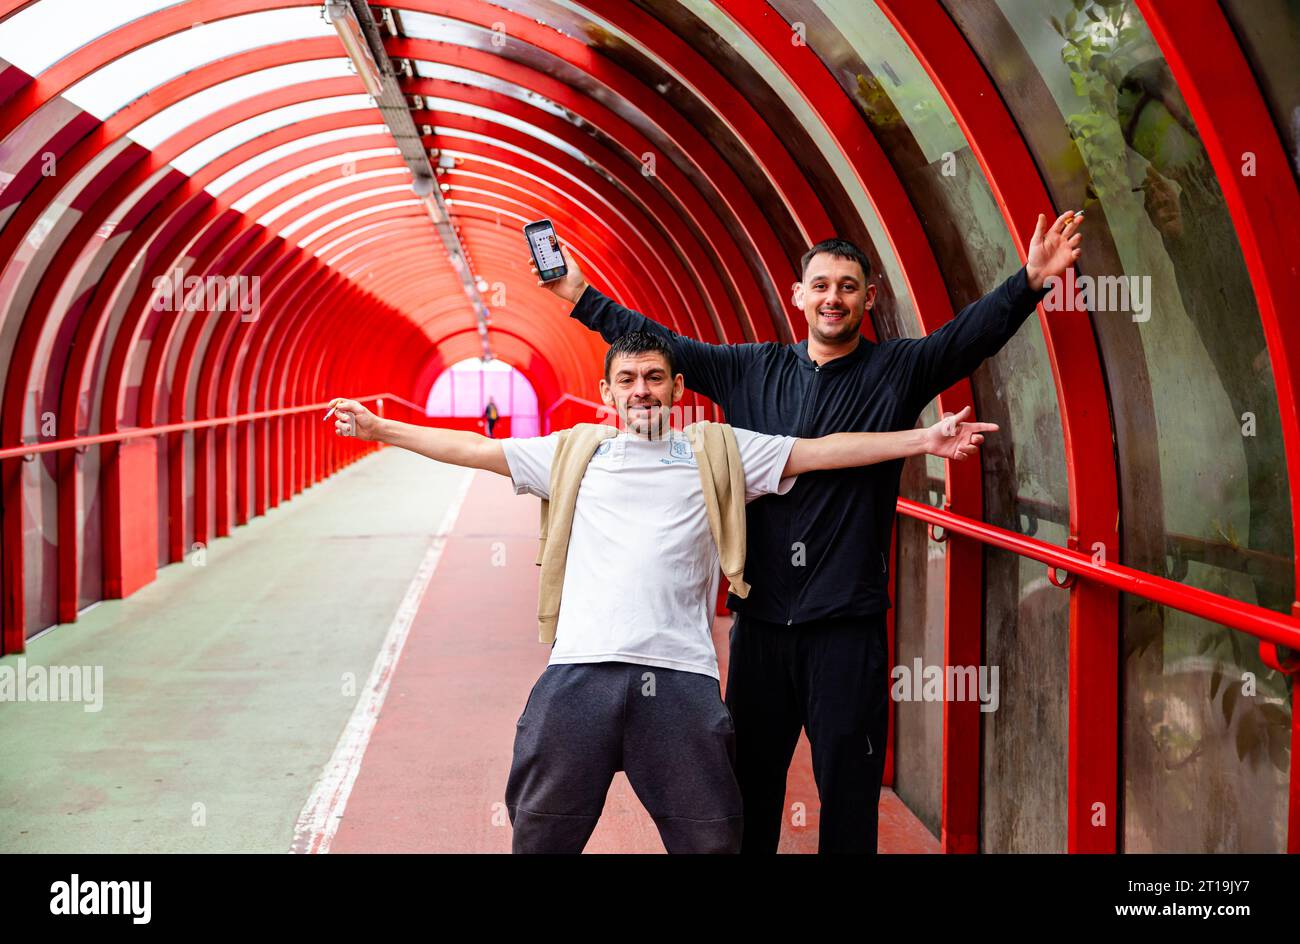 Zwei Einheimische posieren glücklich mit Handys und Zigaretten in der Hand und bestehen darauf, dass ihr Foto im SECC-Tunnel/Brücke gemacht wurde Stockfoto